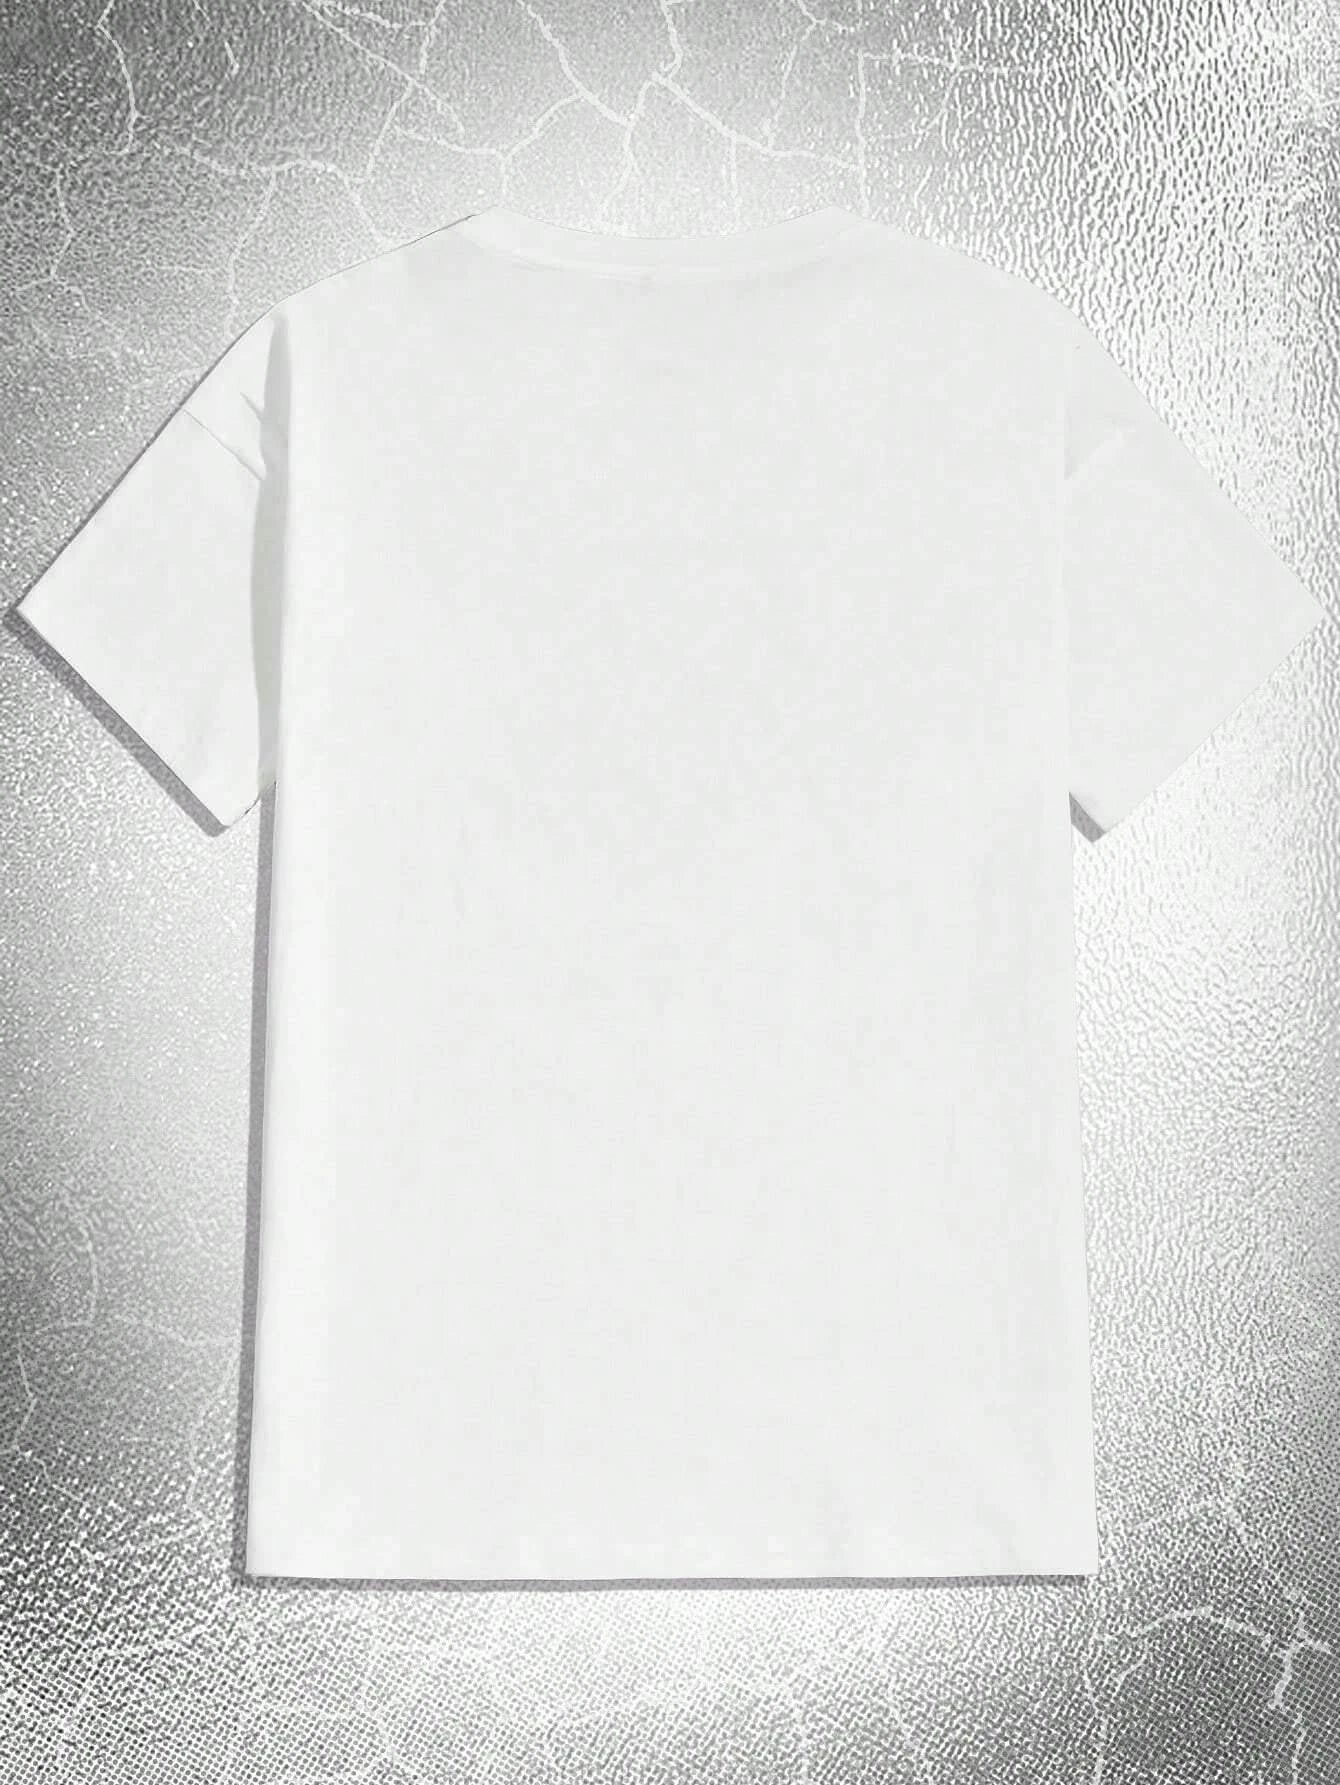 6527 a01-02 Camiseta Goth estampado de esqueleto